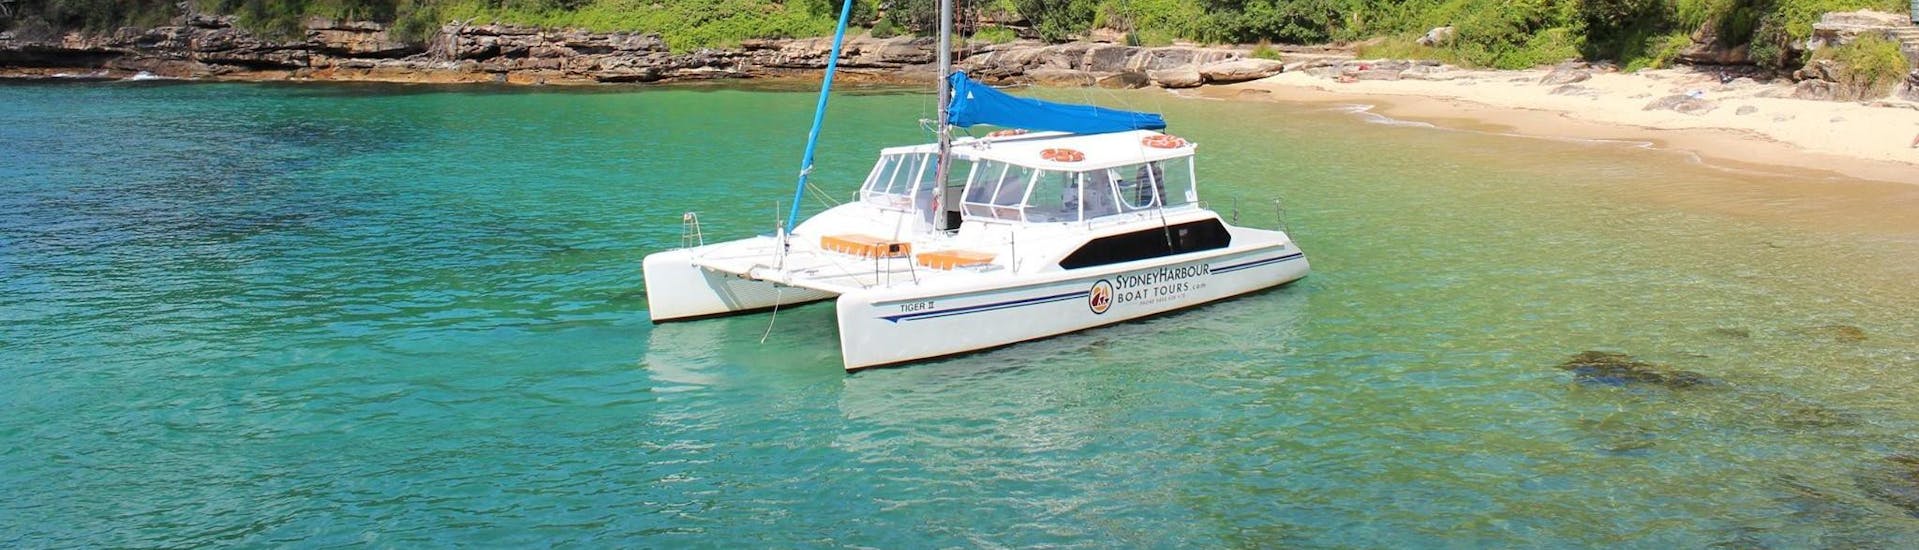 Balade privée en bateau - Sydney Harbour avec Visites touristiques.